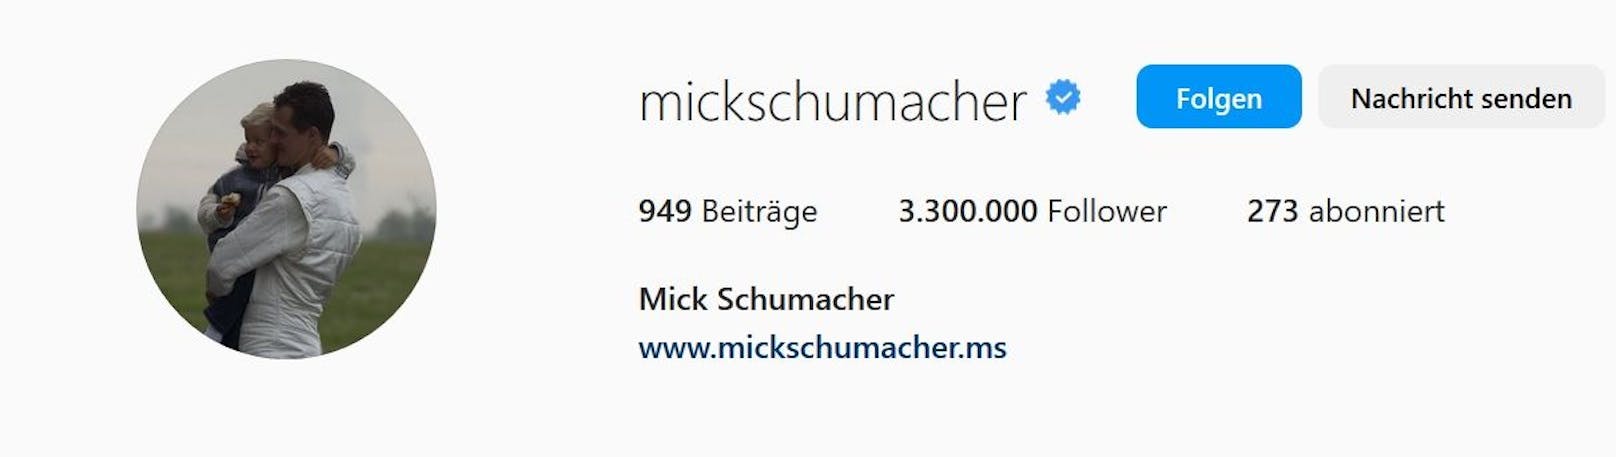 Mick Schumacher ändert sein Instagram-Profilbild. 